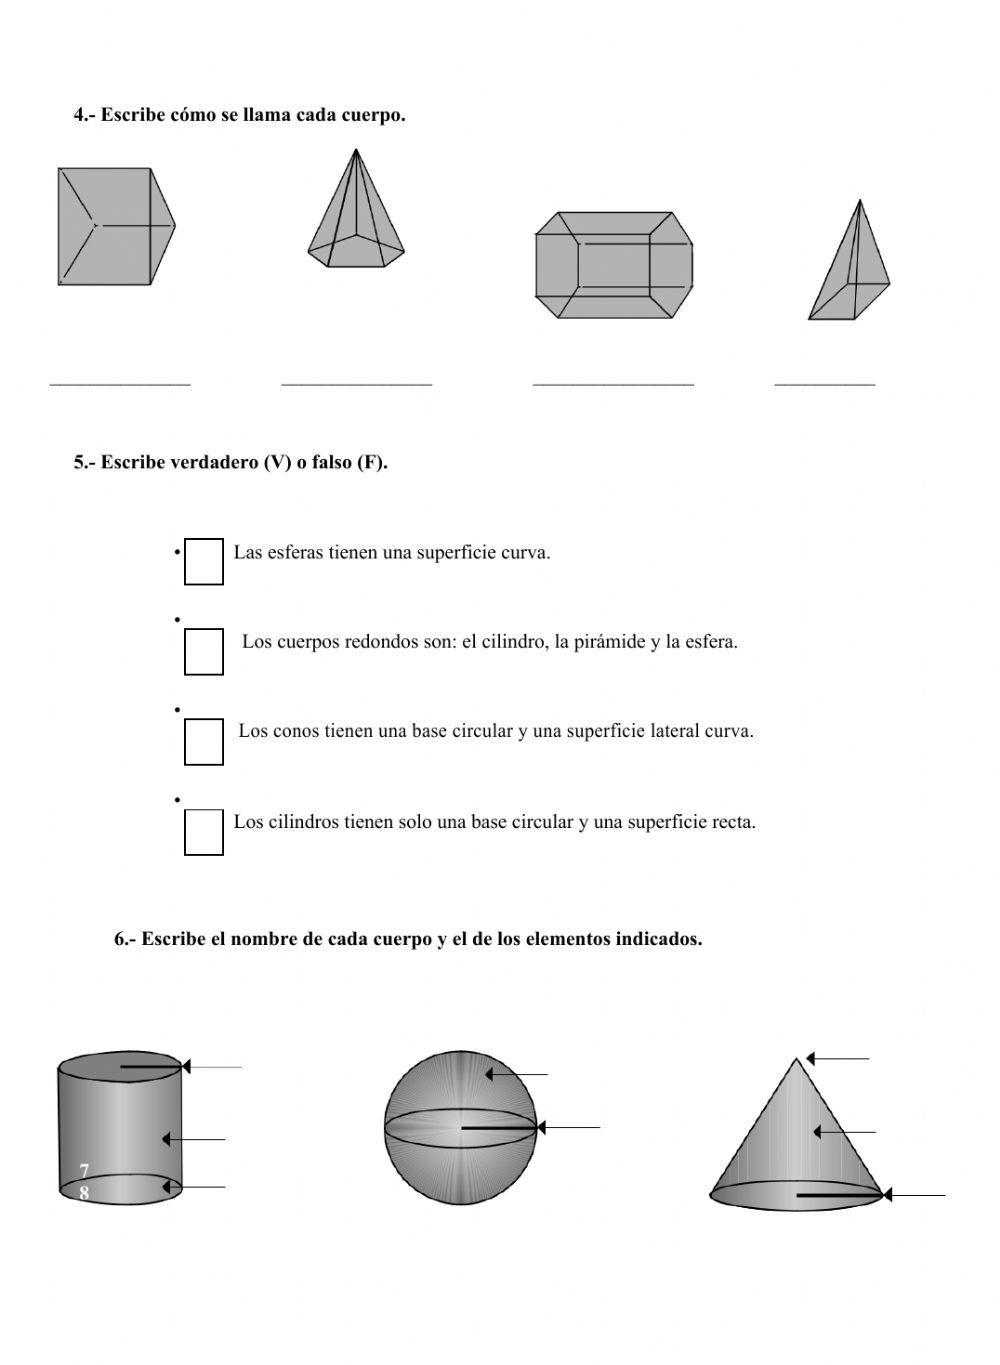 Ficha de evaluación de matemáticas T-12